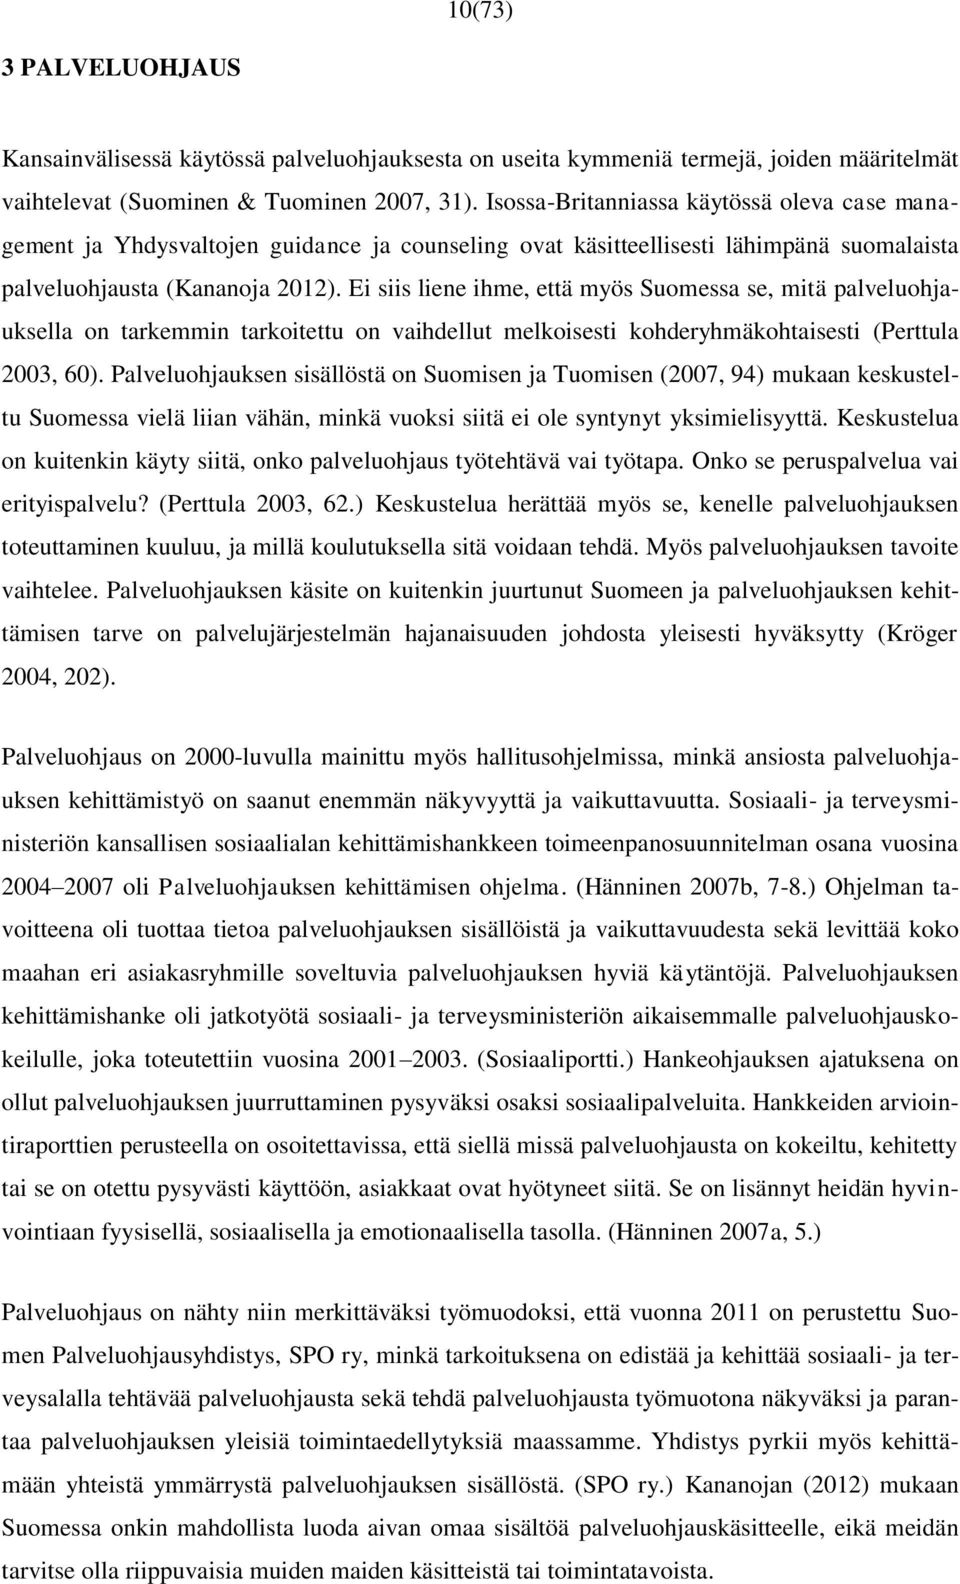 Ei siis liene ihme, että myös Suomessa se, mitä palveluohjauksella on tarkemmin tarkoitettu on vaihdellut melkoisesti kohderyhmäkohtaisesti (Perttula 2003, 60).